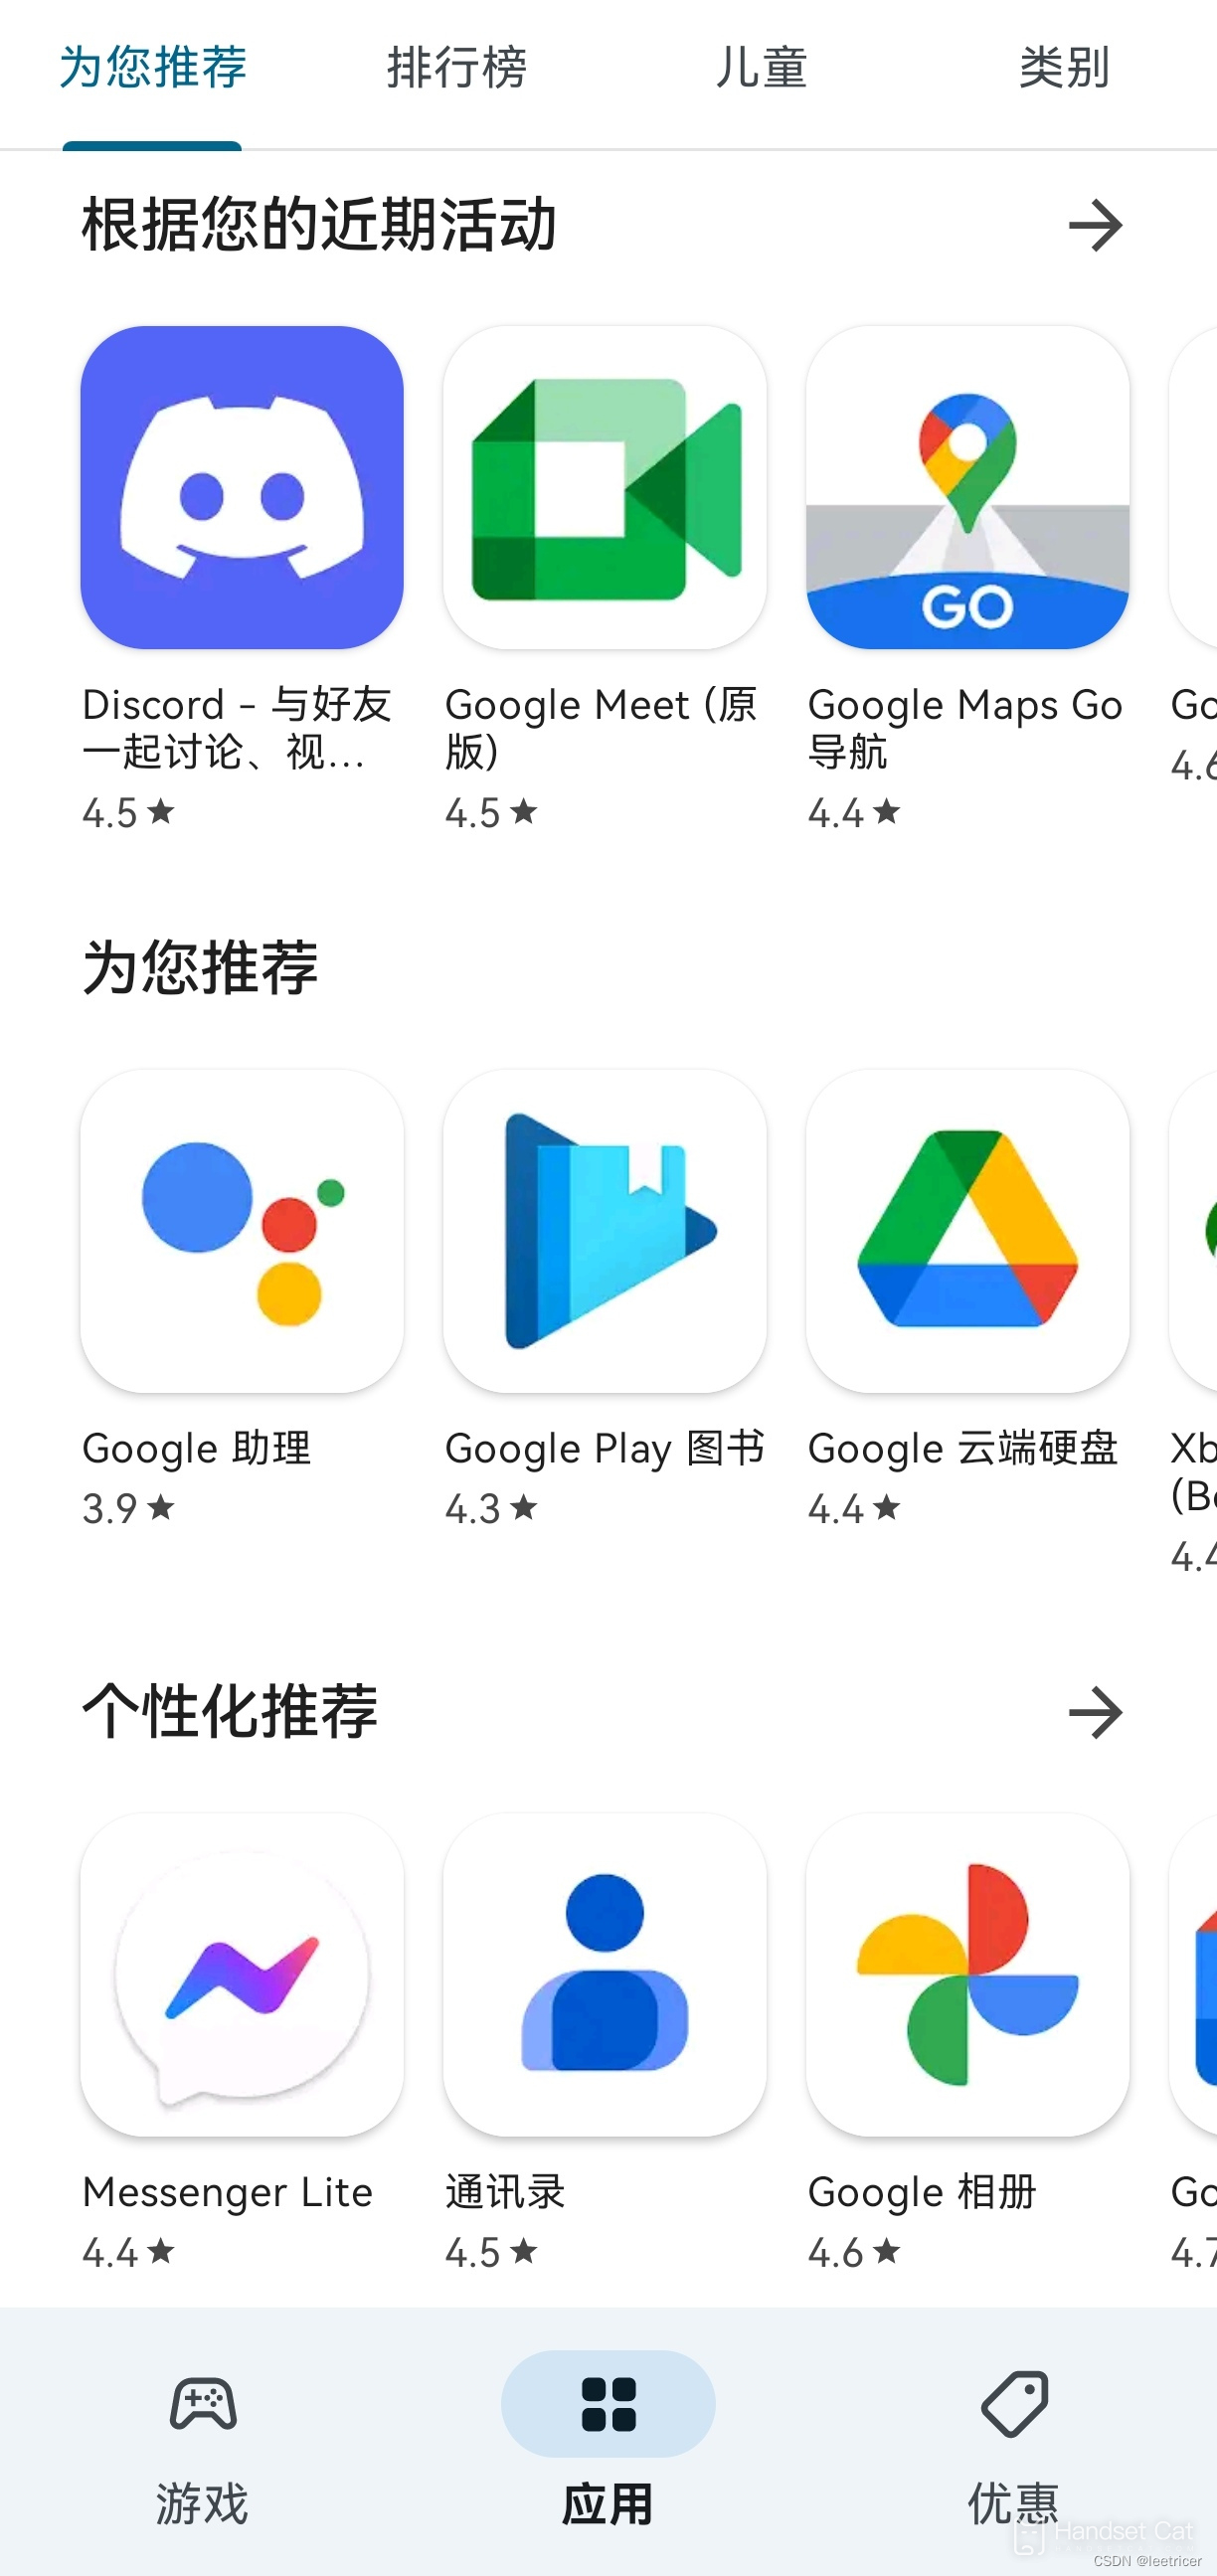 Учебник Google по установке Hongmeng 3.0